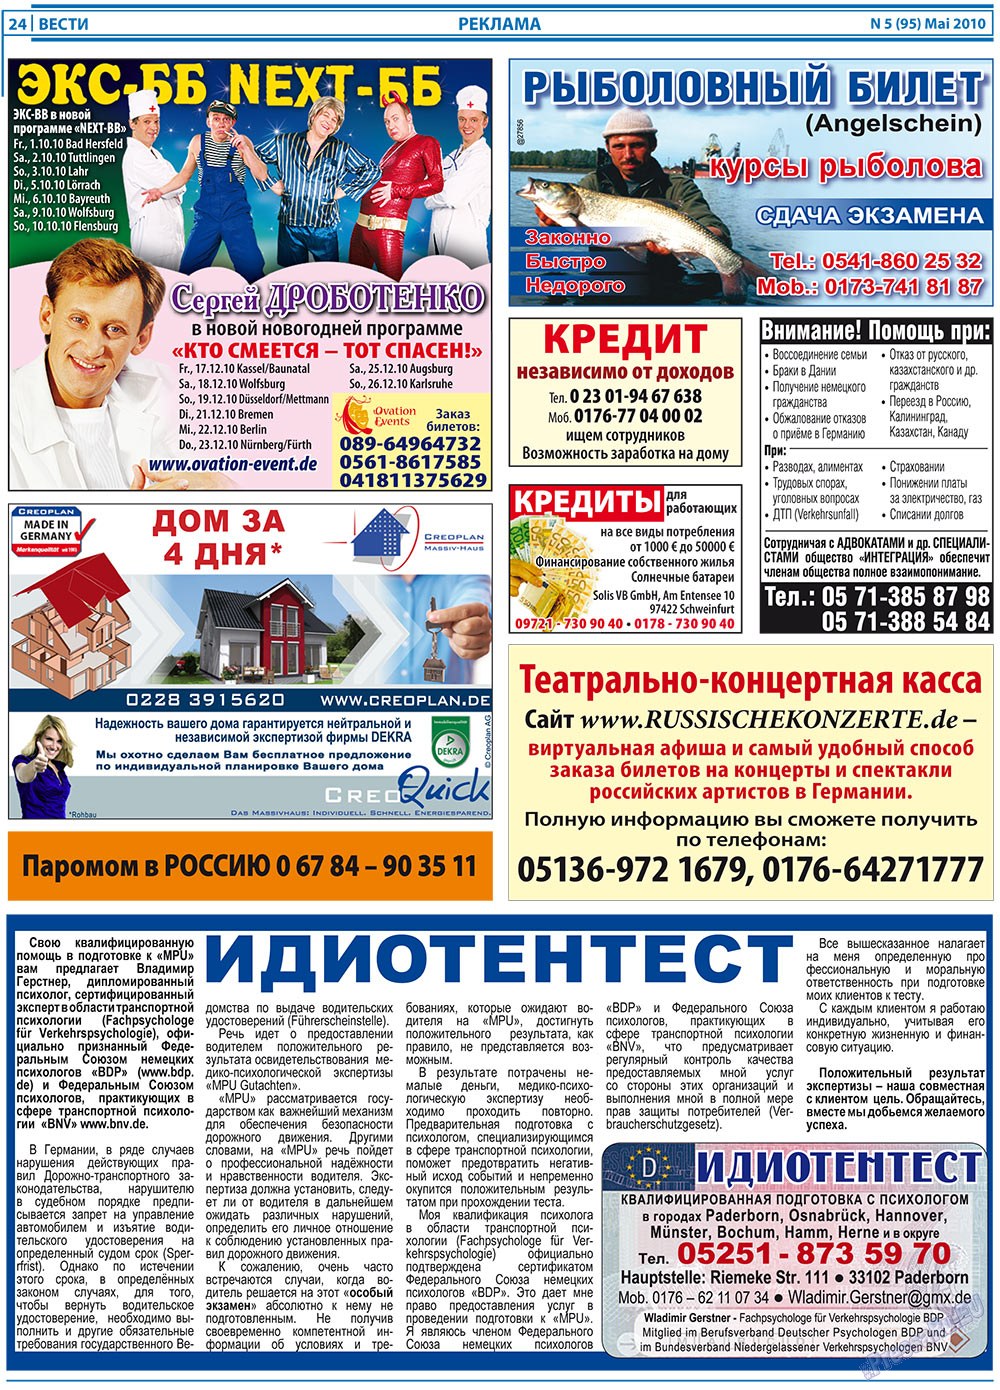 Вести, газета. 2010 №5 стр.24